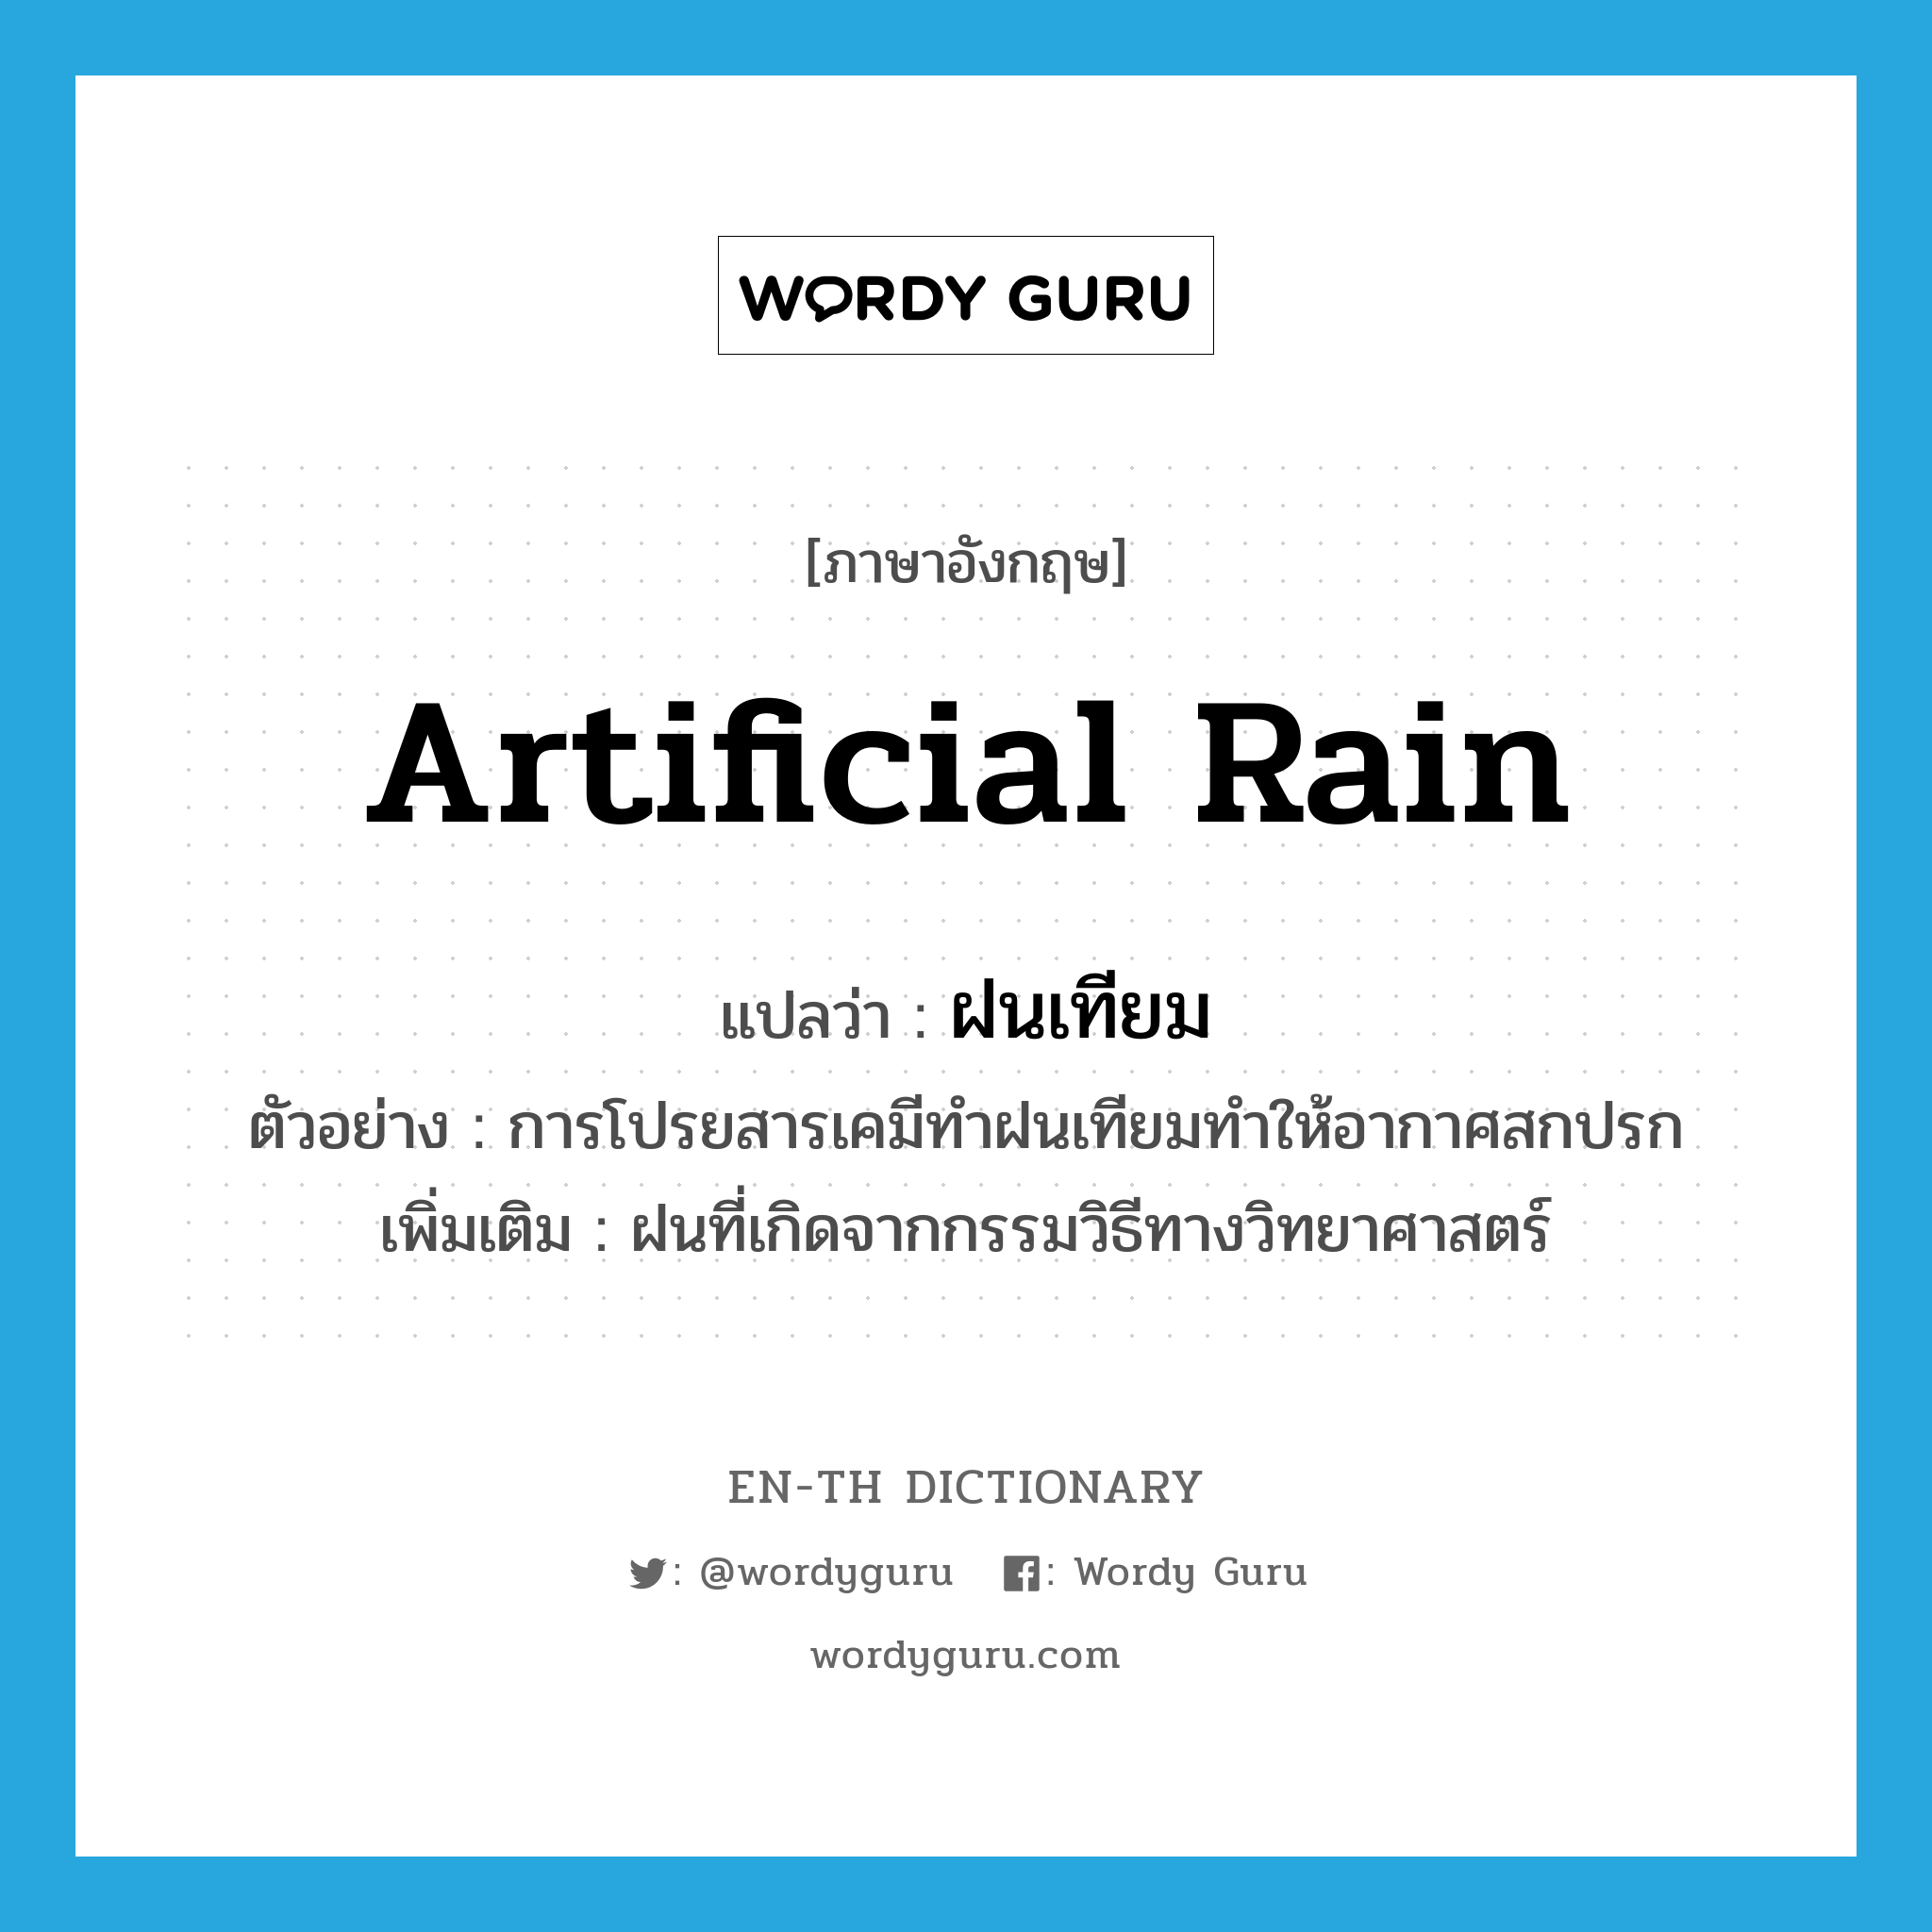 artificial rain แปลว่า?, คำศัพท์ภาษาอังกฤษ artificial rain แปลว่า ฝนเทียม ประเภท N ตัวอย่าง การโปรยสารเคมีทำฝนเทียมทำให้อากาศสกปรก เพิ่มเติม ฝนที่เกิดจากกรรมวิธีทางวิทยาศาสตร์ หมวด N